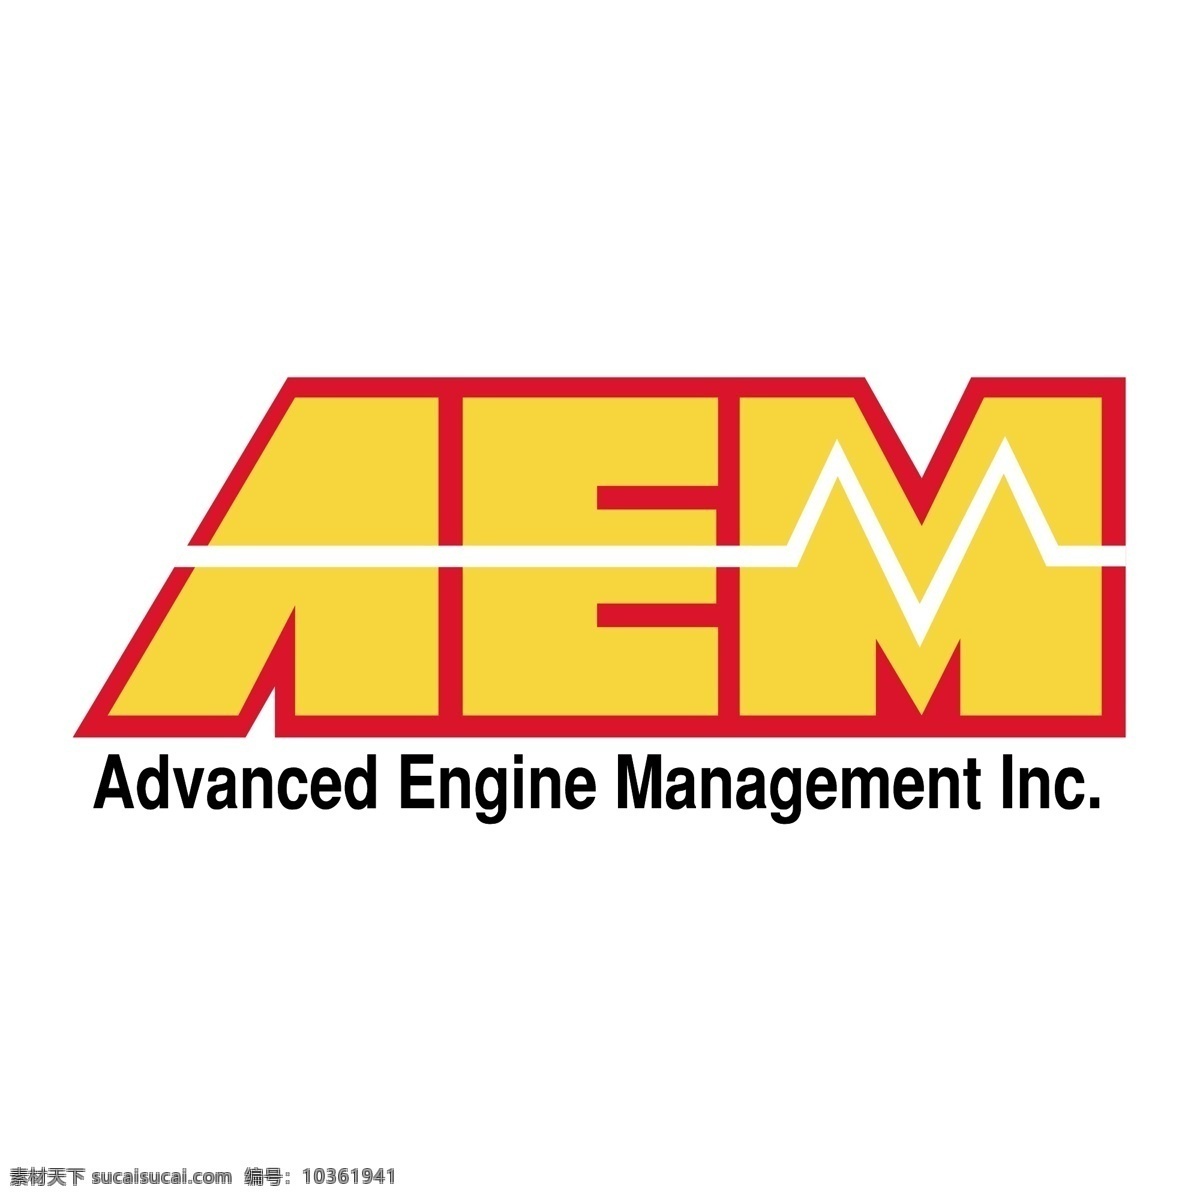 美国 设备 制造商 协会 免费 aem 标识 系统 psd源文件 logo设计